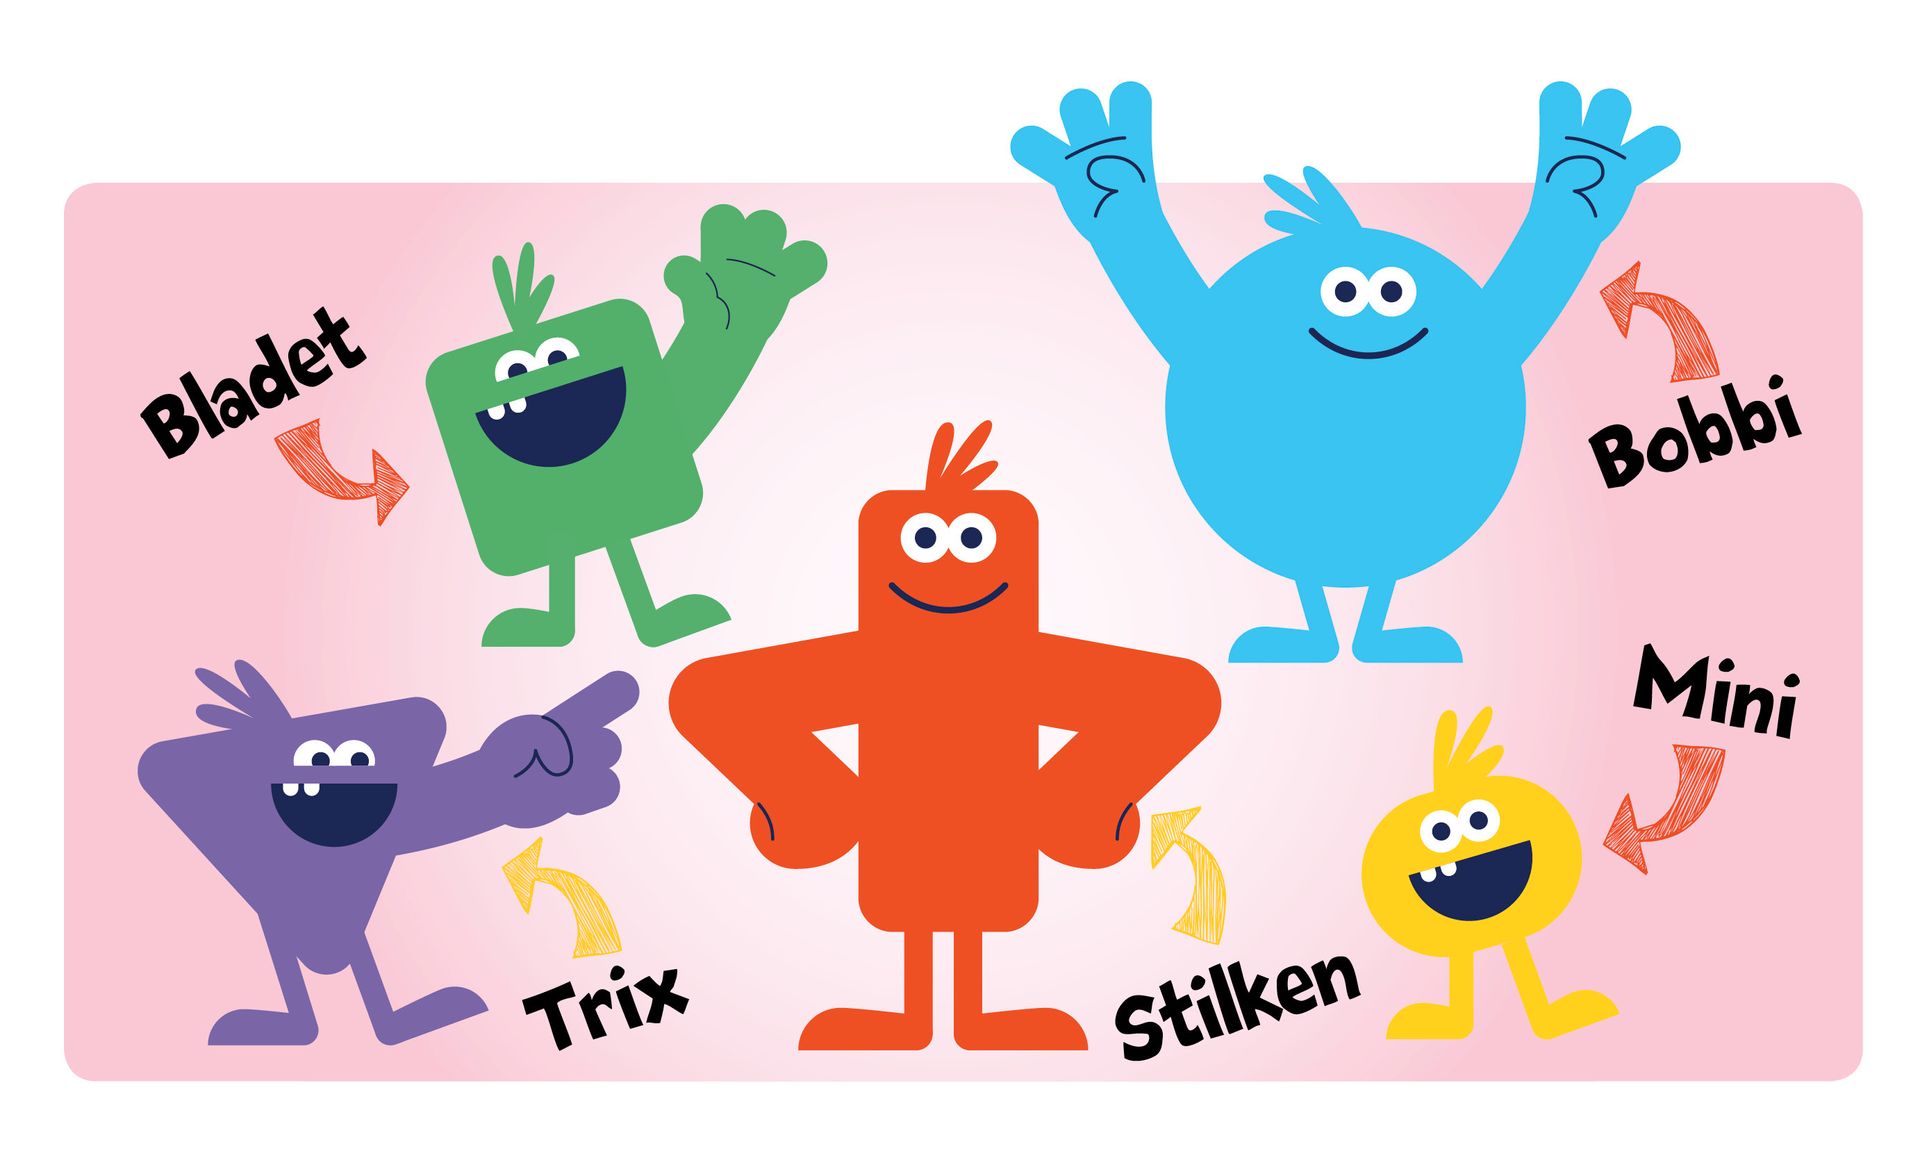 Illustrasjonen viser fem forskjellige Junior-maskoter med store smil: En lilla trekant med én arm som peker (Trix), en grønn firkant med én arm som vinker (Bladet), én rød "pølseformet" med armene i siden (Stilken), én kulerund blå med begge armene løftet i været (Bobbi) og én liten kulerund, armløs og gul (Mini).